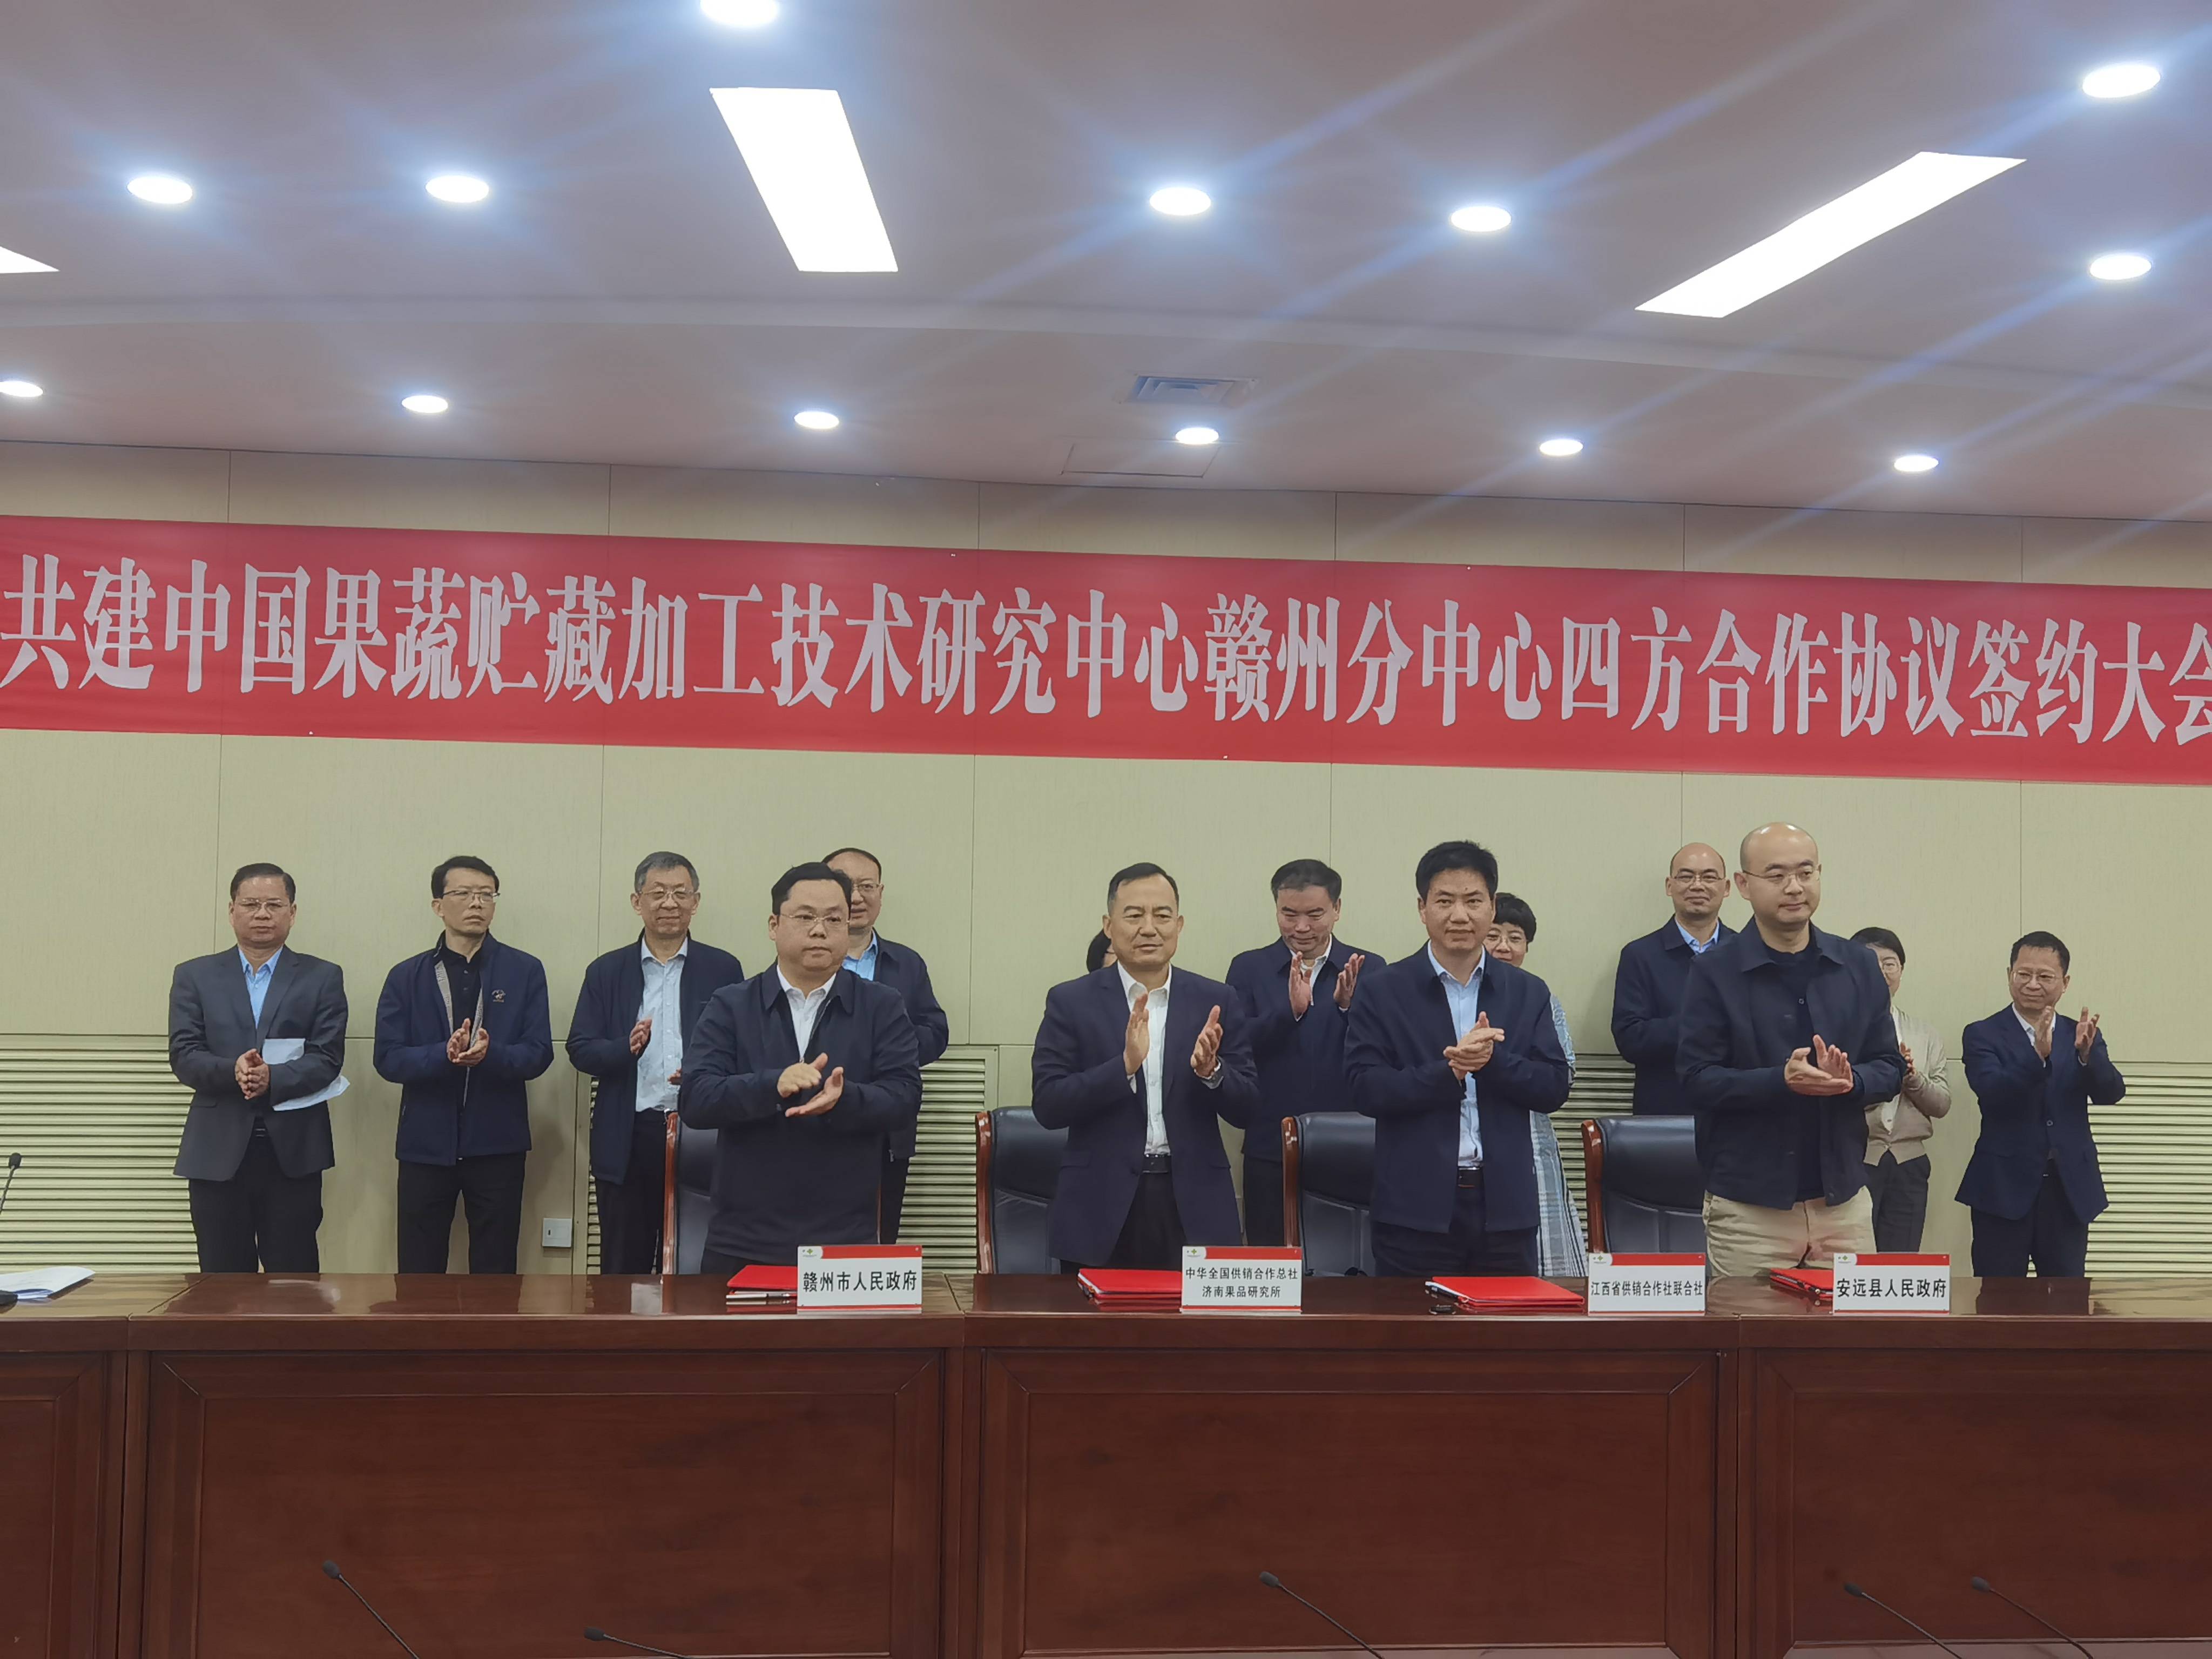 苹果版全民:中国果蔬贮藏加工技术研究中心赣州分中心 合作协议签约大会成功召开